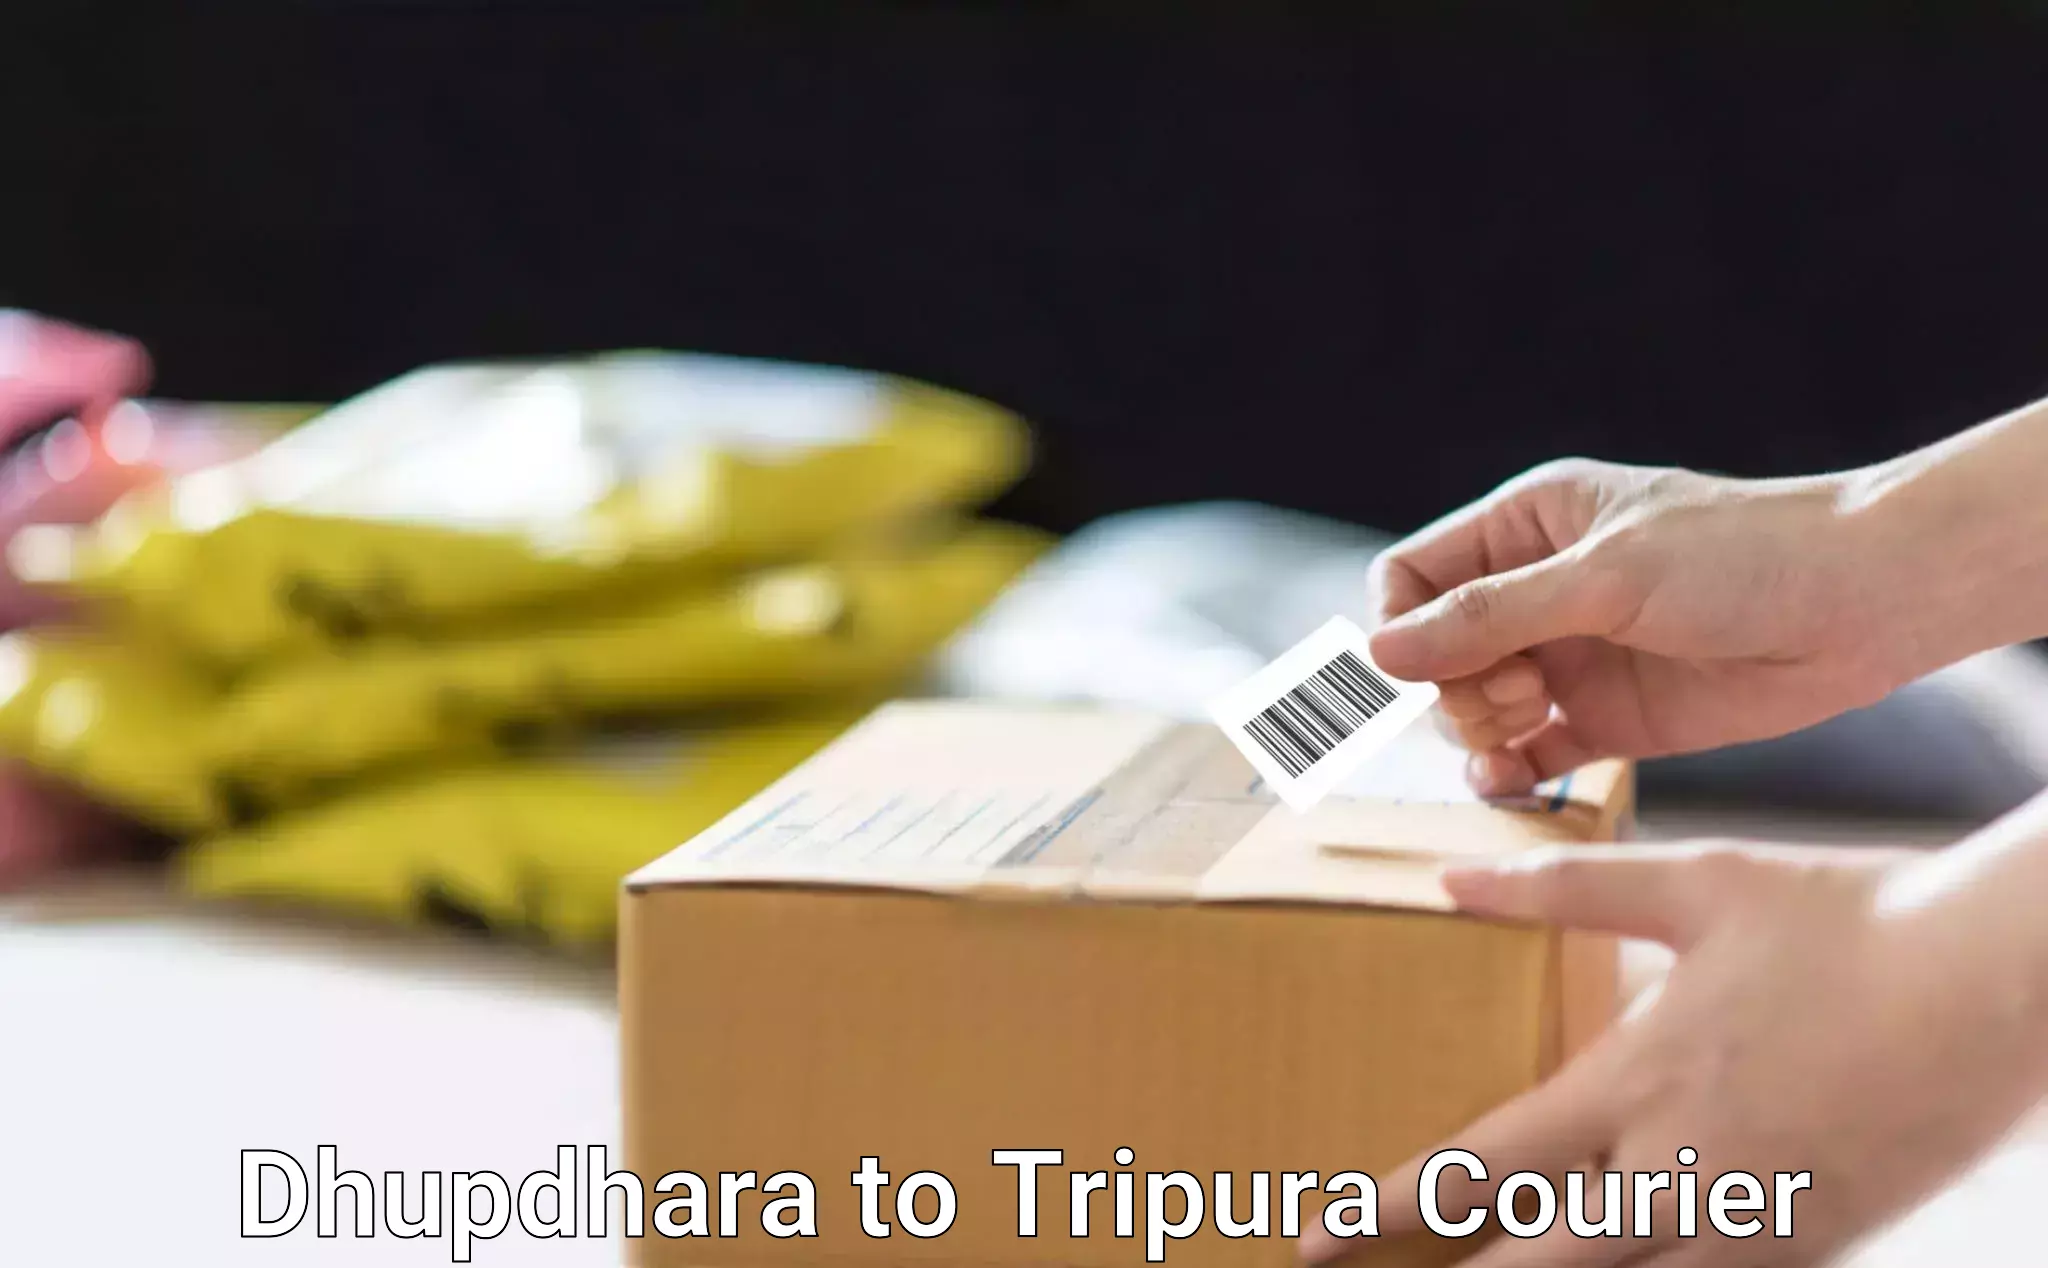 Courier app Dhupdhara to NIT Agartala